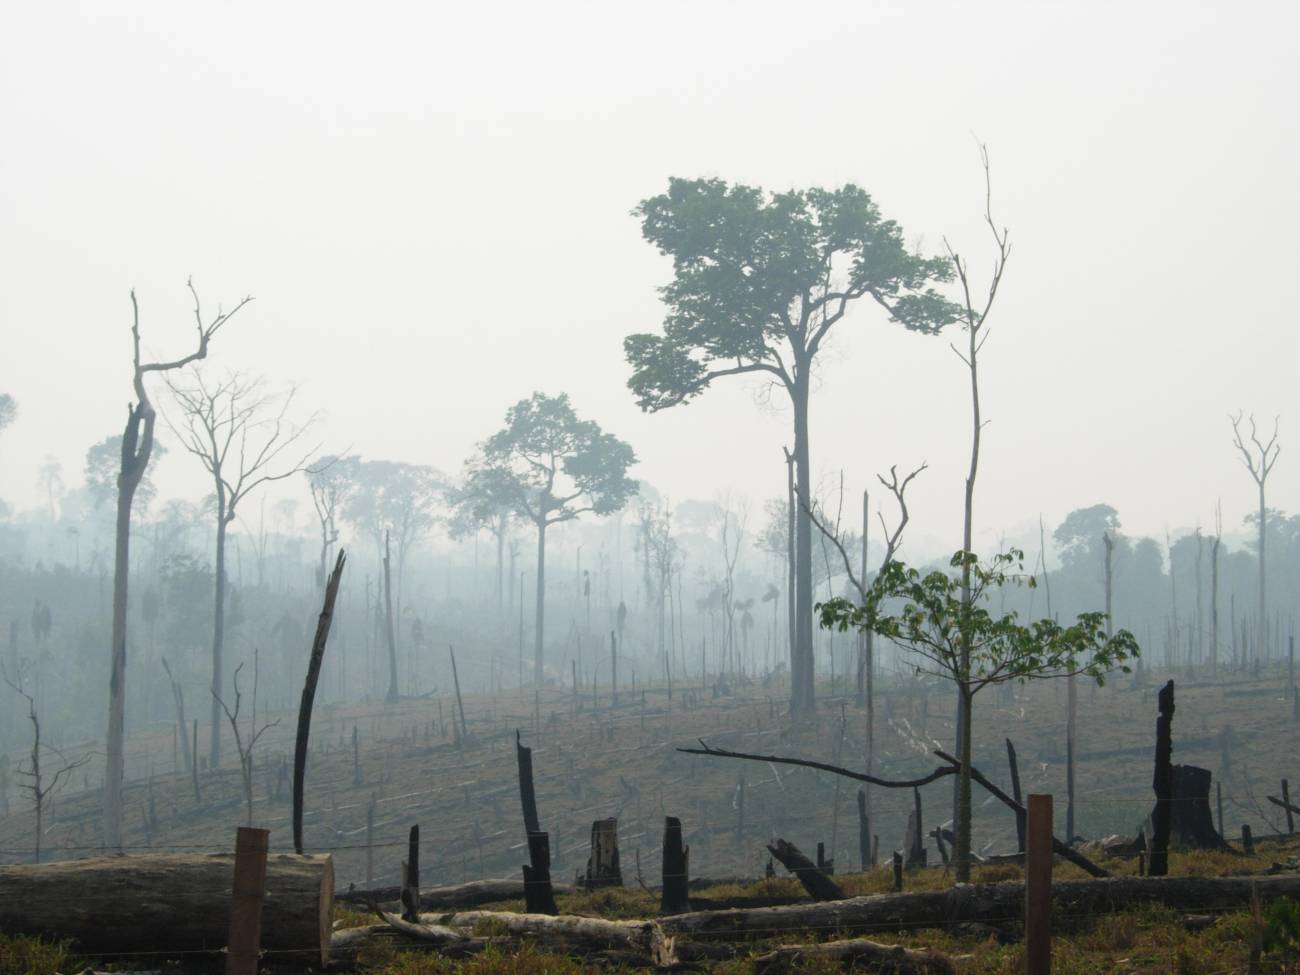 La deforestación de la selva no es rentable económicamente